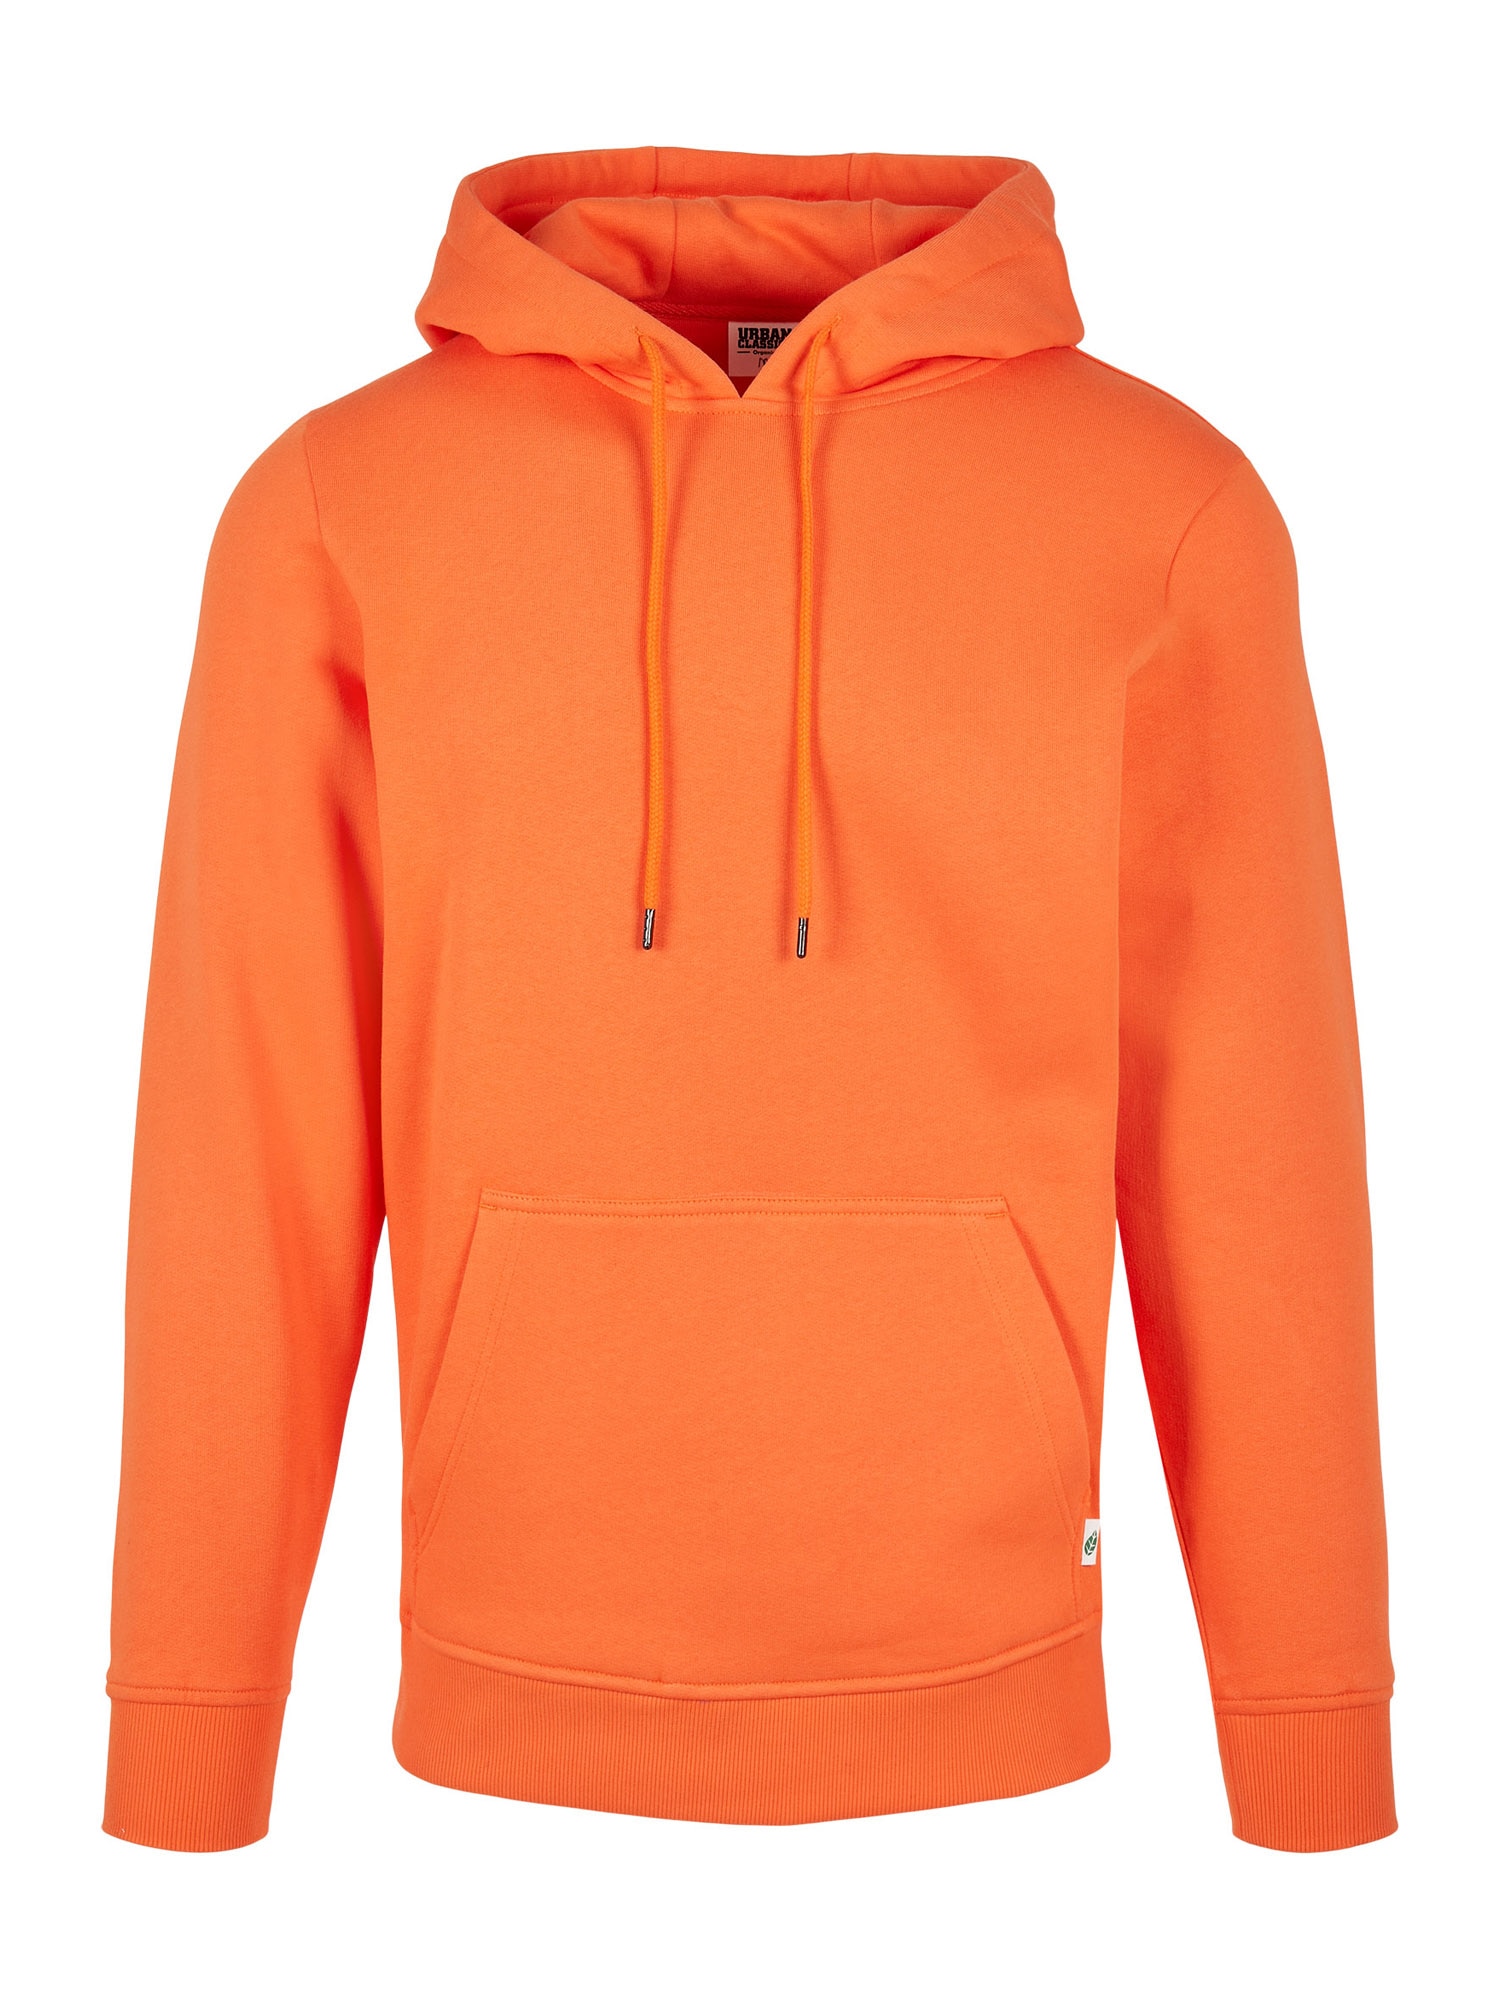 Urban Classics Sweatshirt  laranja